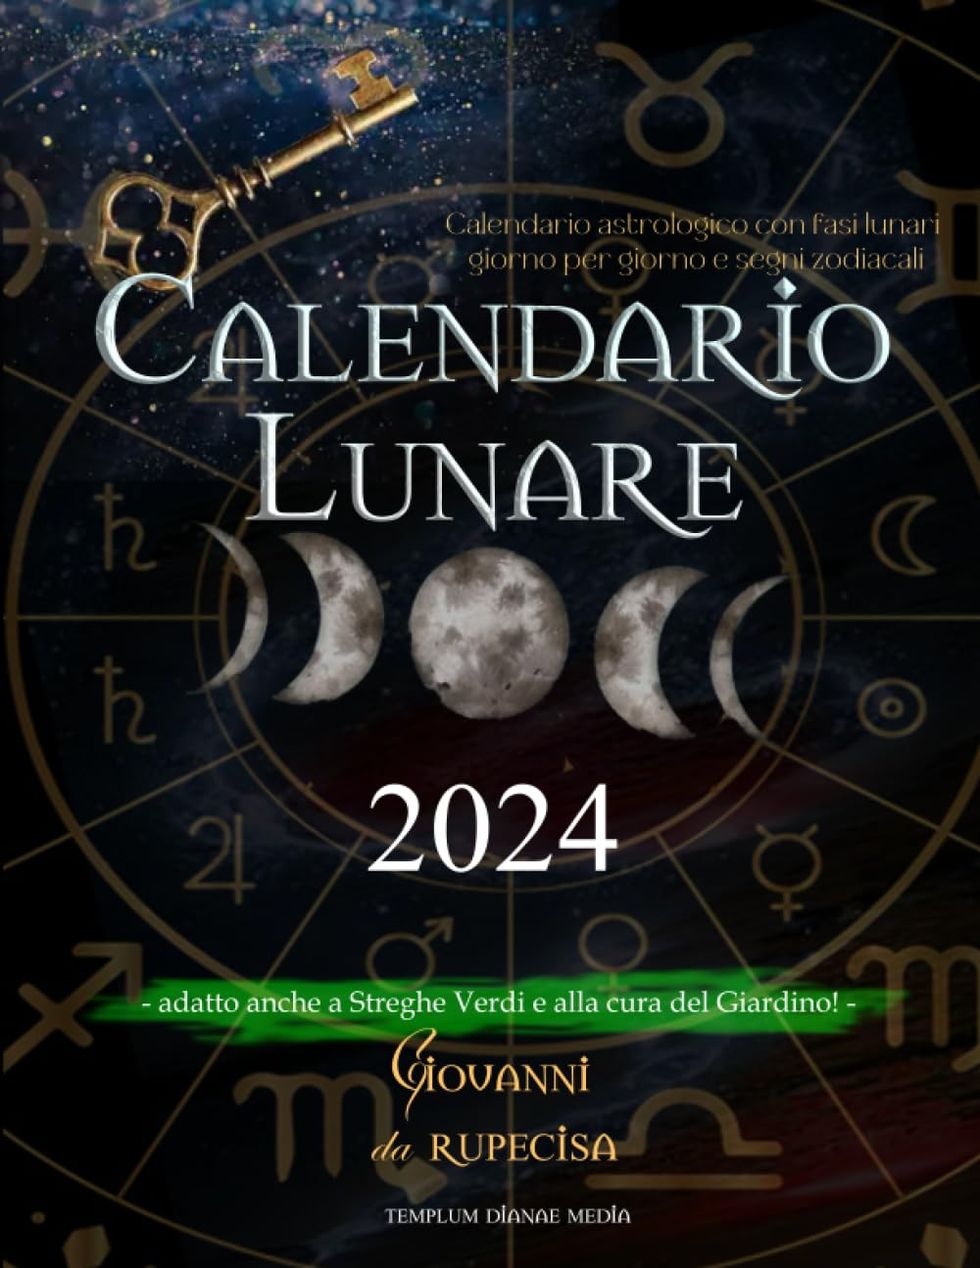 Calendario 2024 - Lunario delle semine e dei lavori